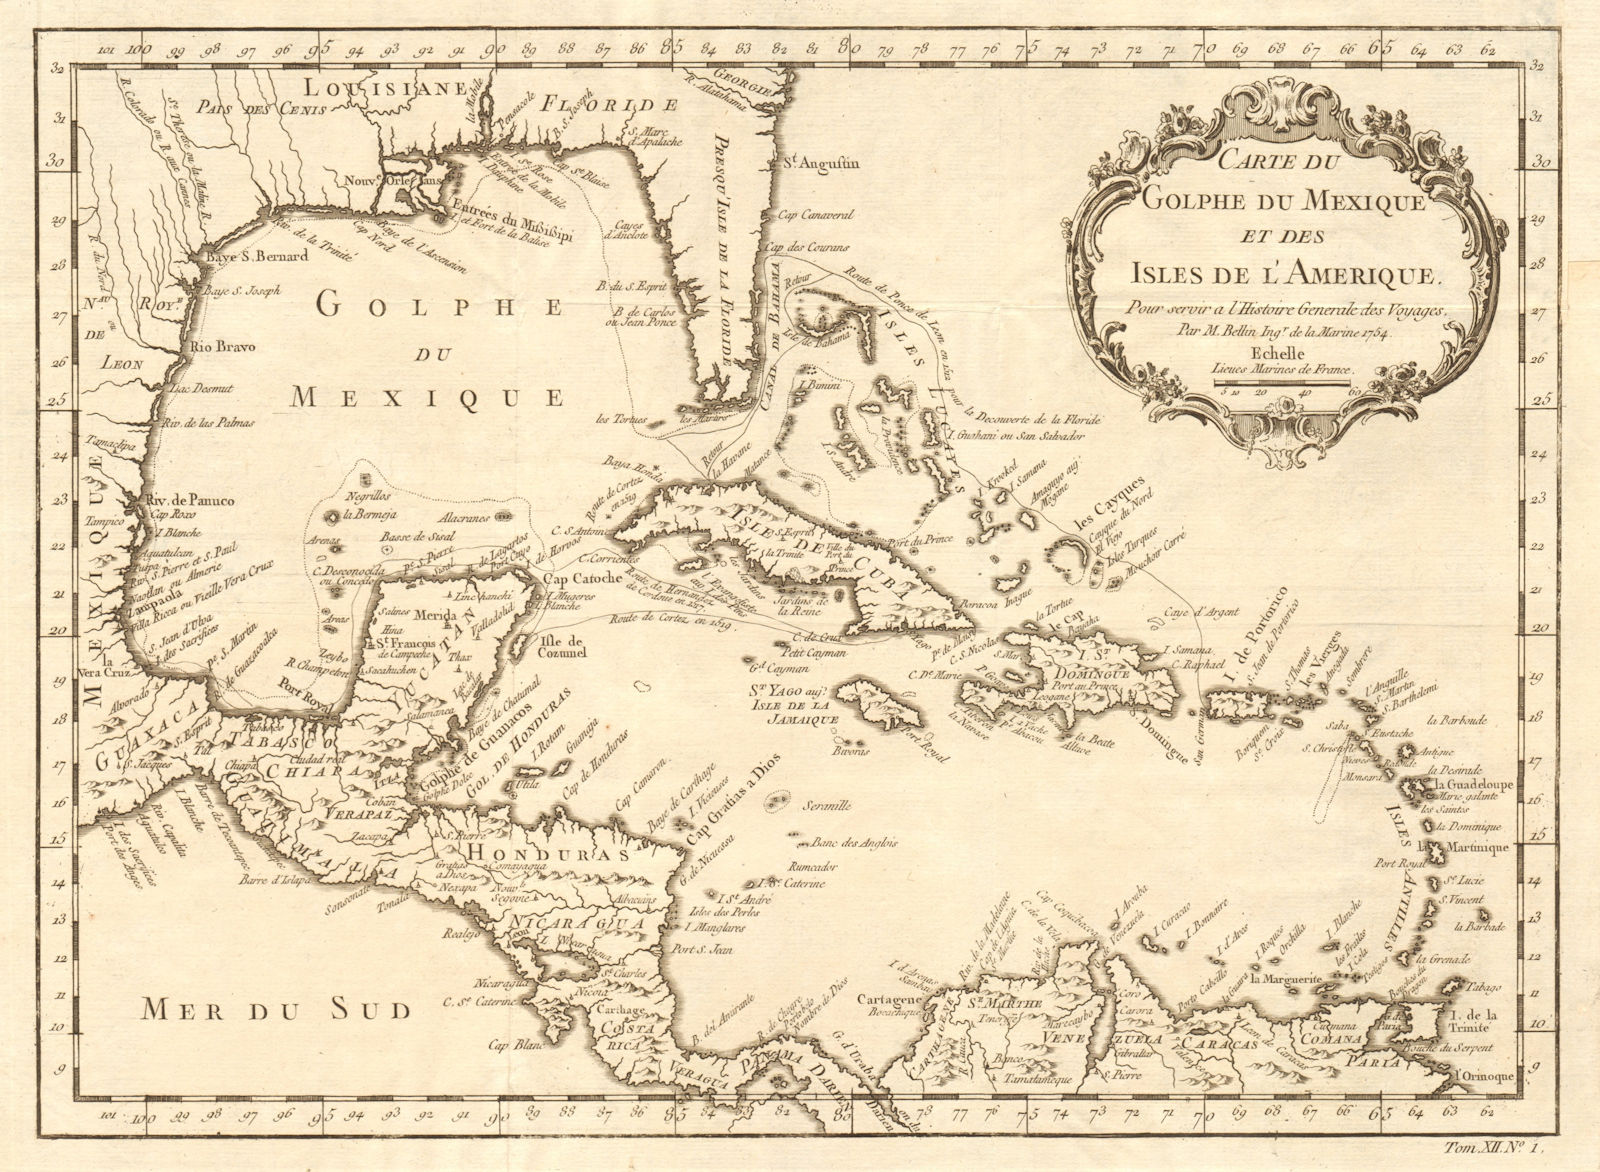 Associate Product 'Carte du Golfe du Mexique et des Isles de l'Amerique' Caribbean BELLIN 1754 map